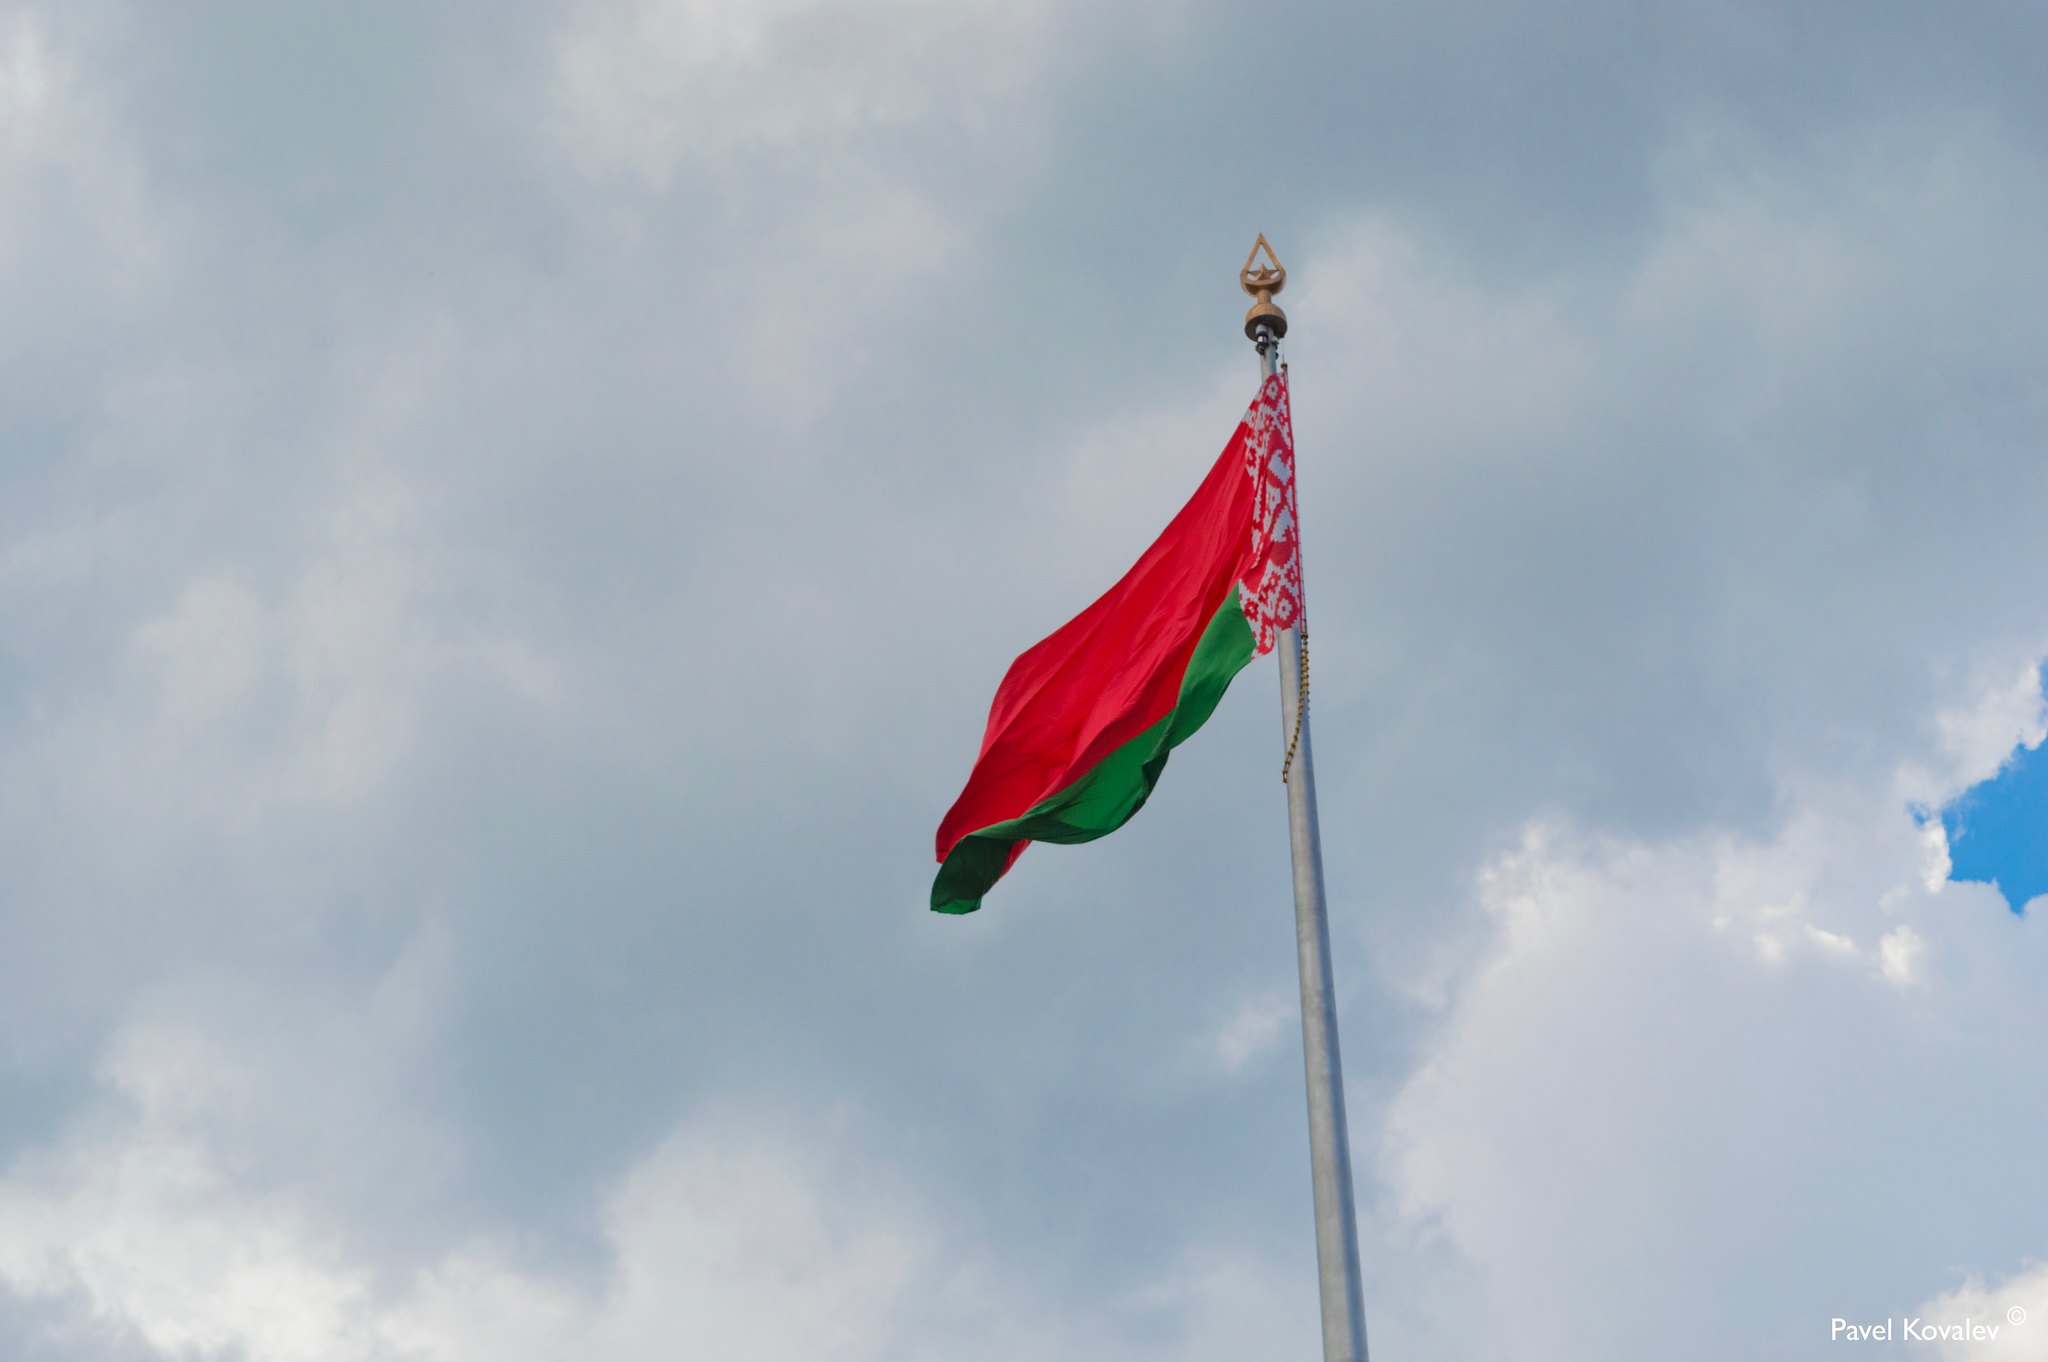 Flag of Belarus